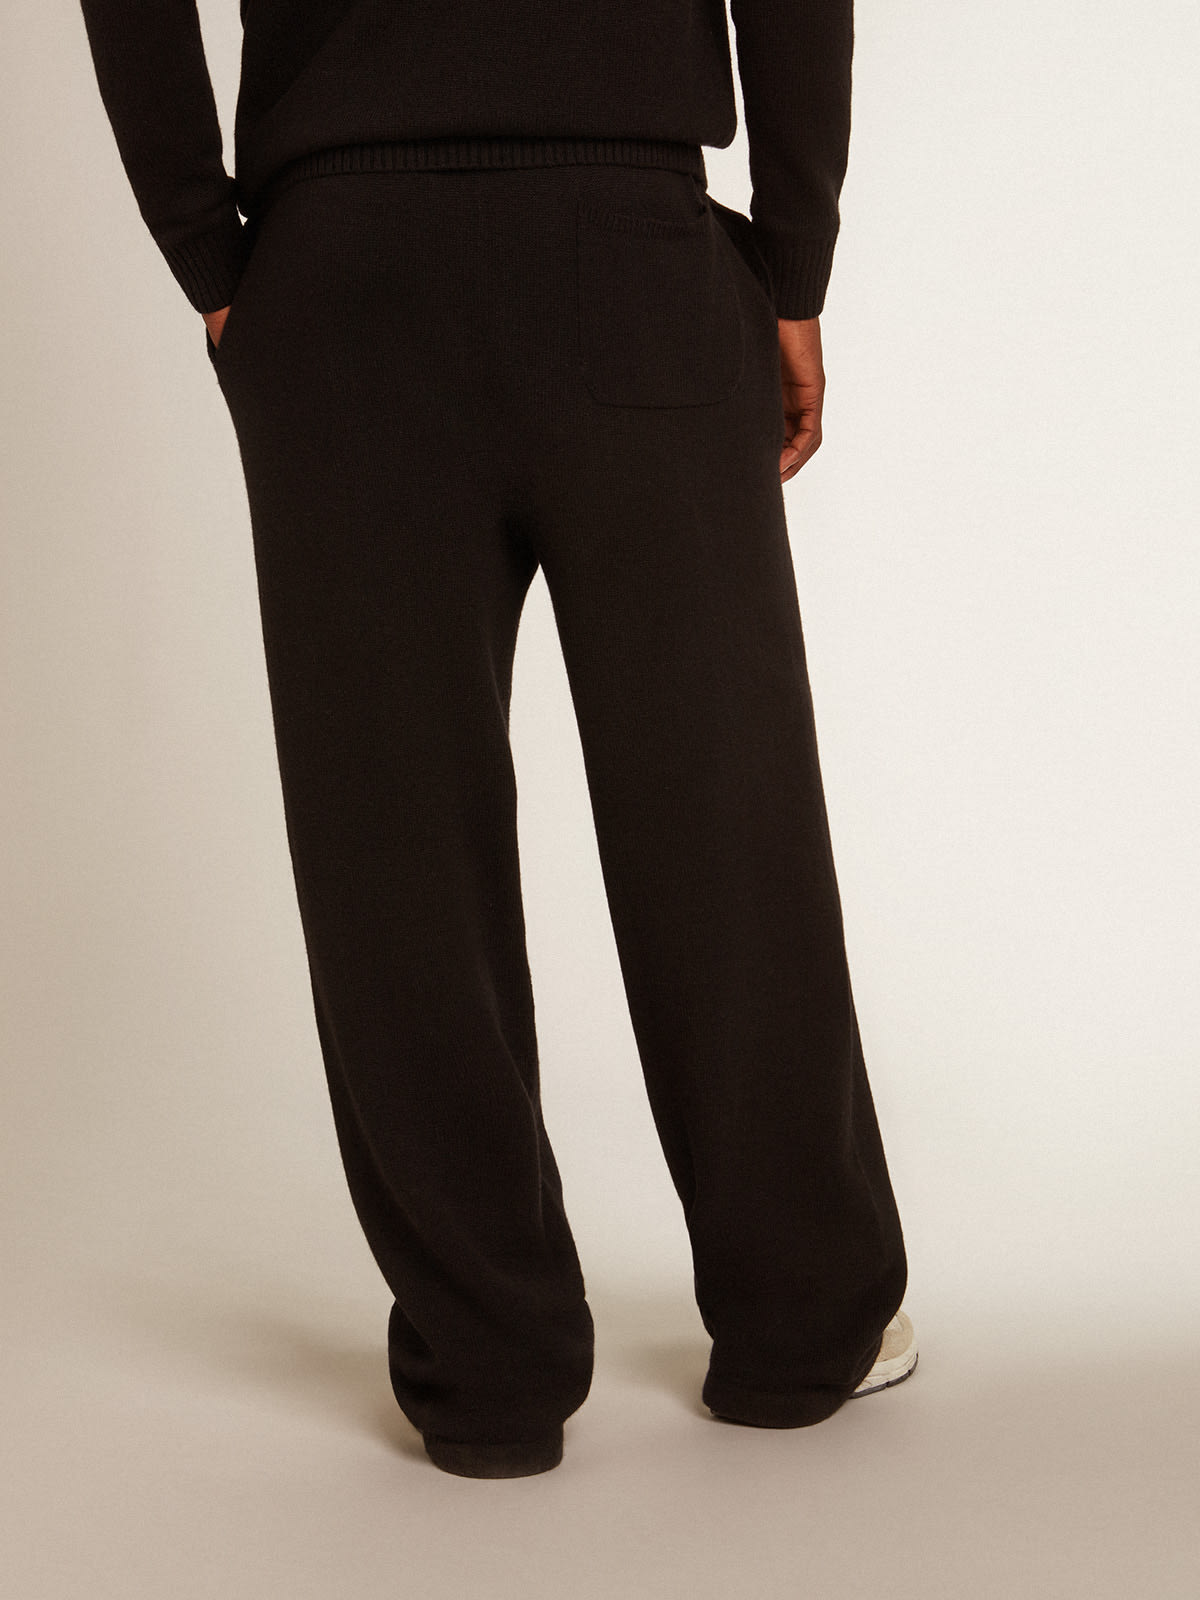 Golden Goose - Pantalone jogging uomo misto cashmere di colore nero in 